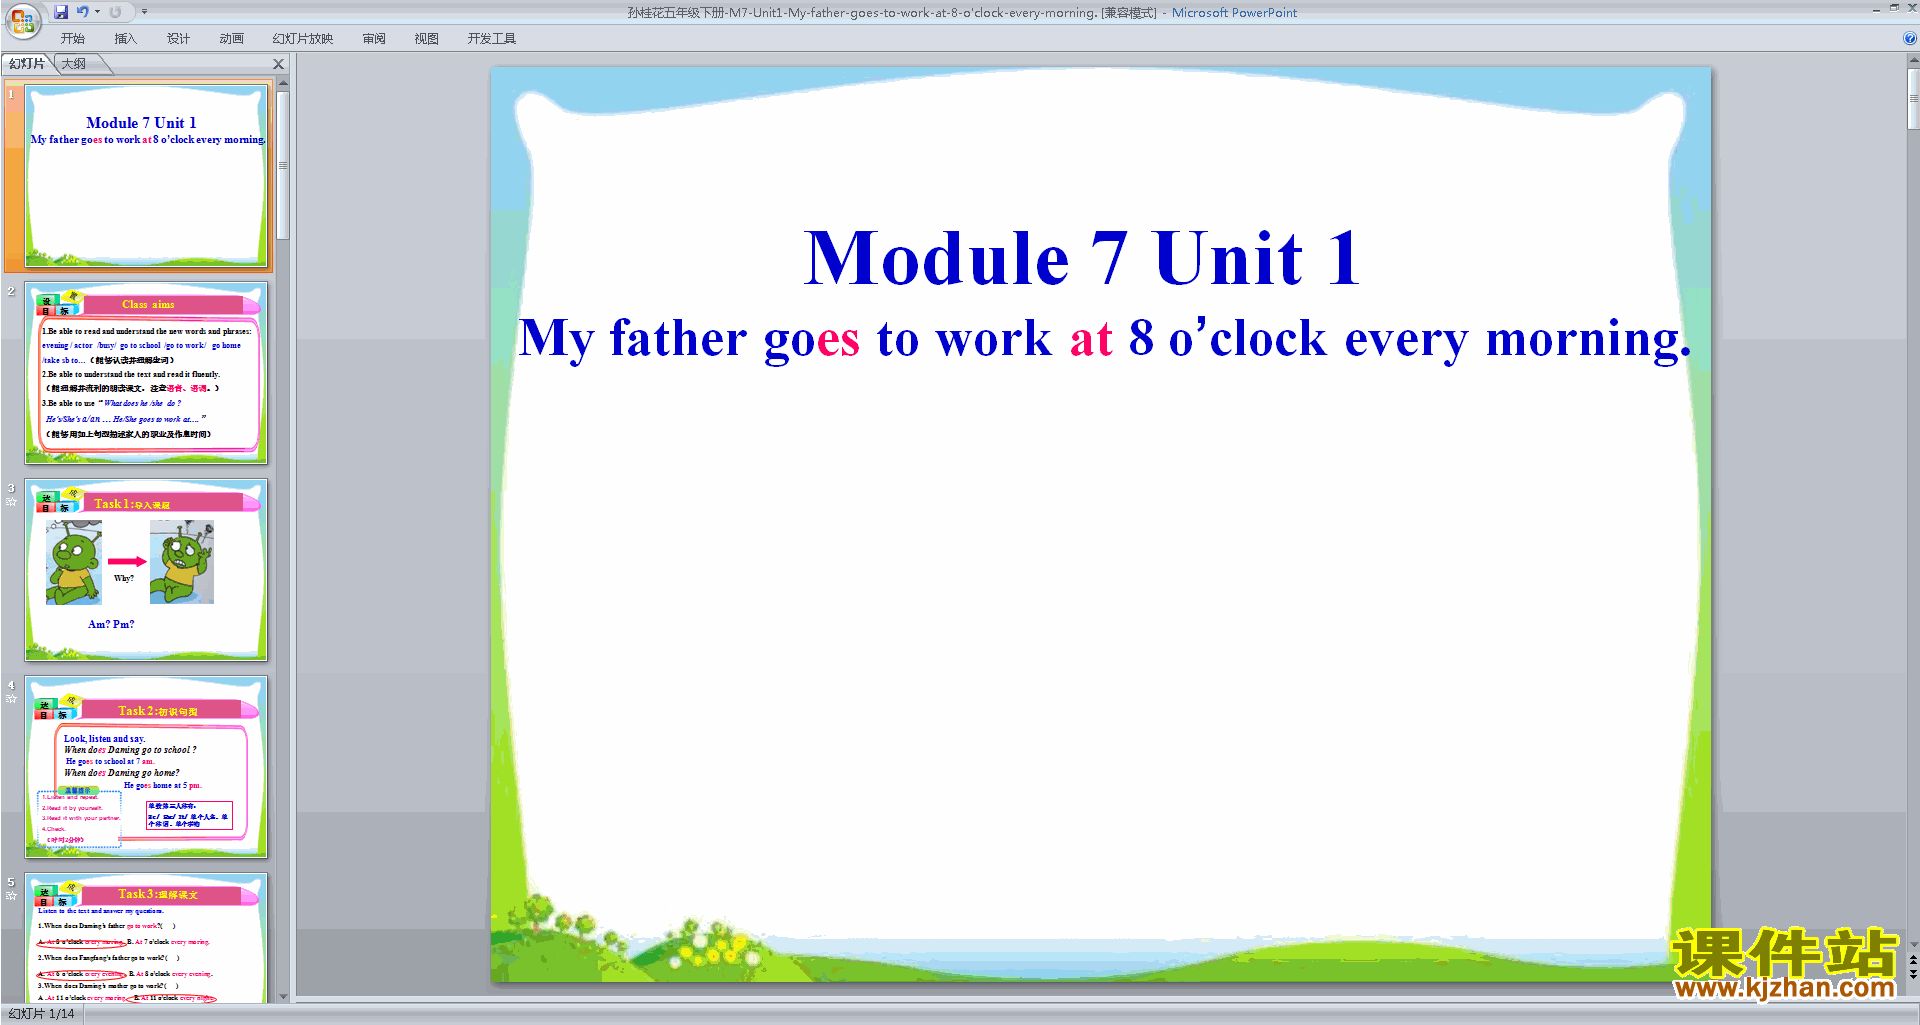 μMy father goes to work at eight o